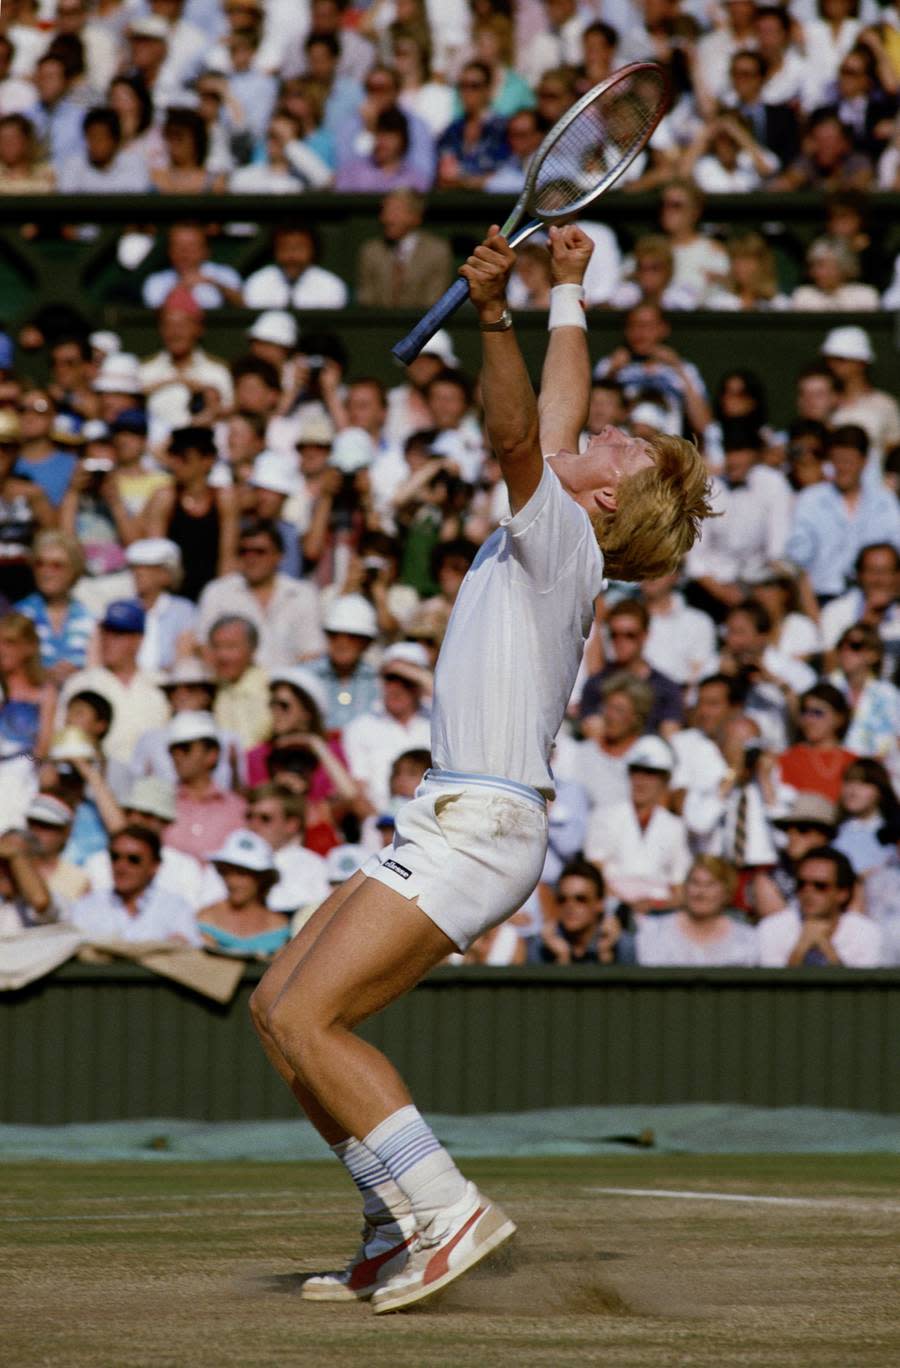 Der Einsatz zahlt sich aus: 6:3, 6:7, 7:6, 6:4. Der 17-Jährige gewinnt 1985 Wimbledon - als jüngster Spieler der Geschichte, als erster Deutscher und erster ungesetzter Profi